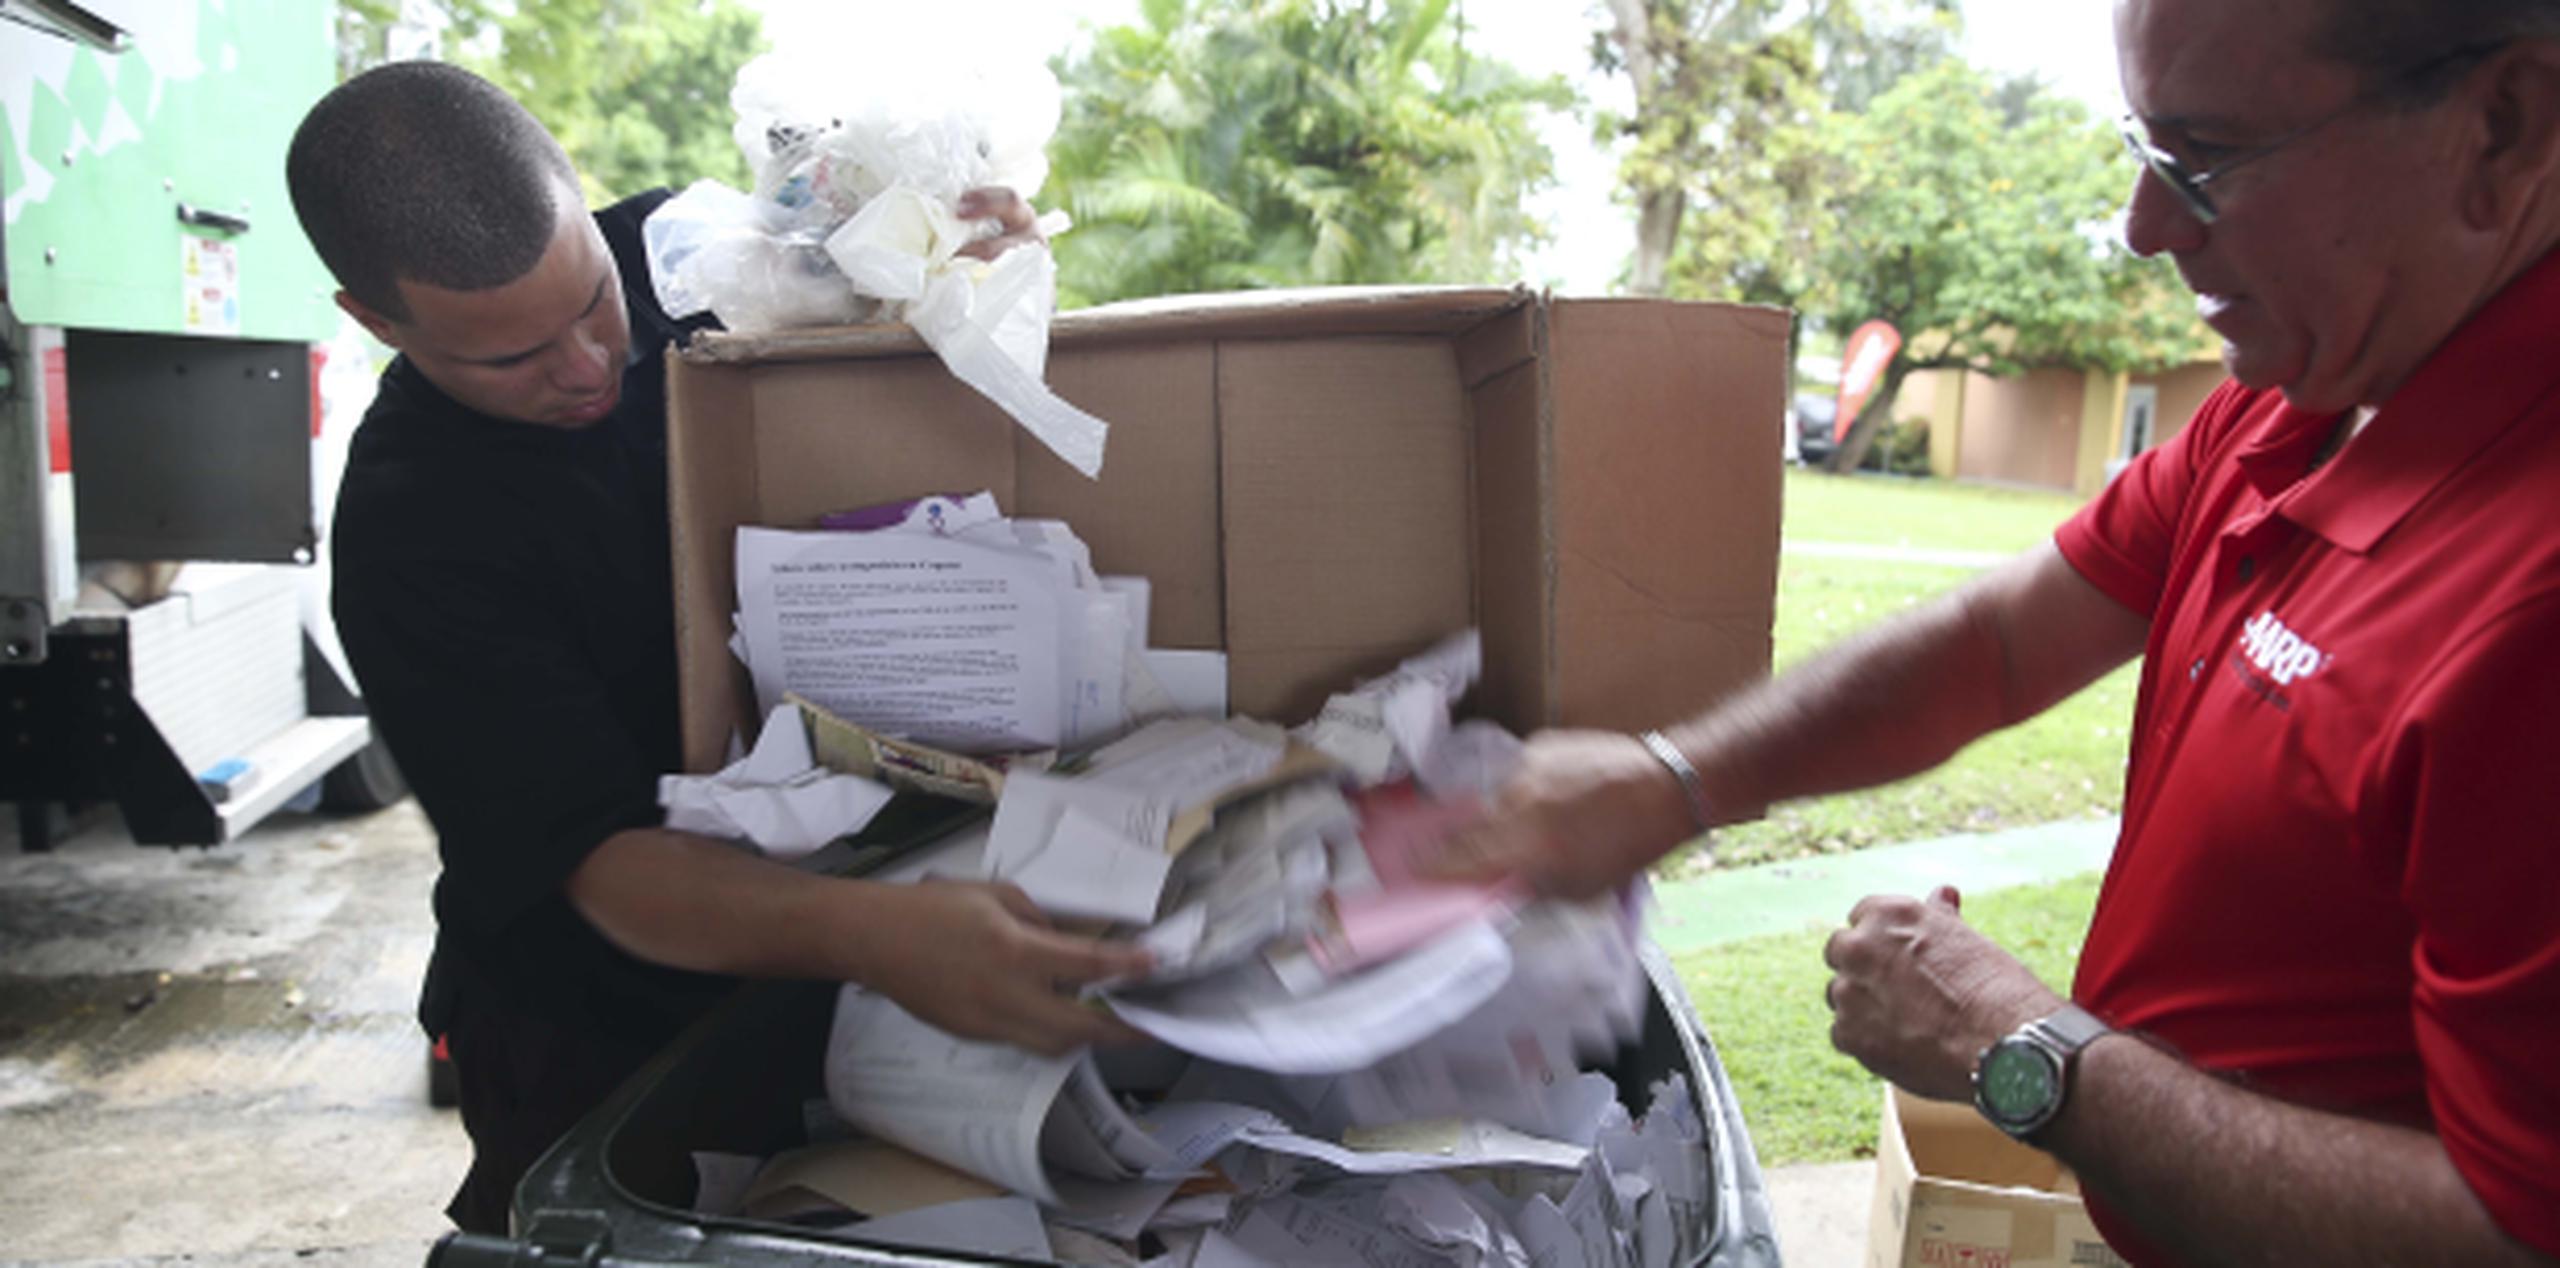 Voluntarios trabajan con documentos que llevó la cuidadanía para ser triturados durante el “Shred Fest 2016” que la AARP realizó en Caguas. (WANDALIZ.VEGA@GFRMEDIA.COM)
